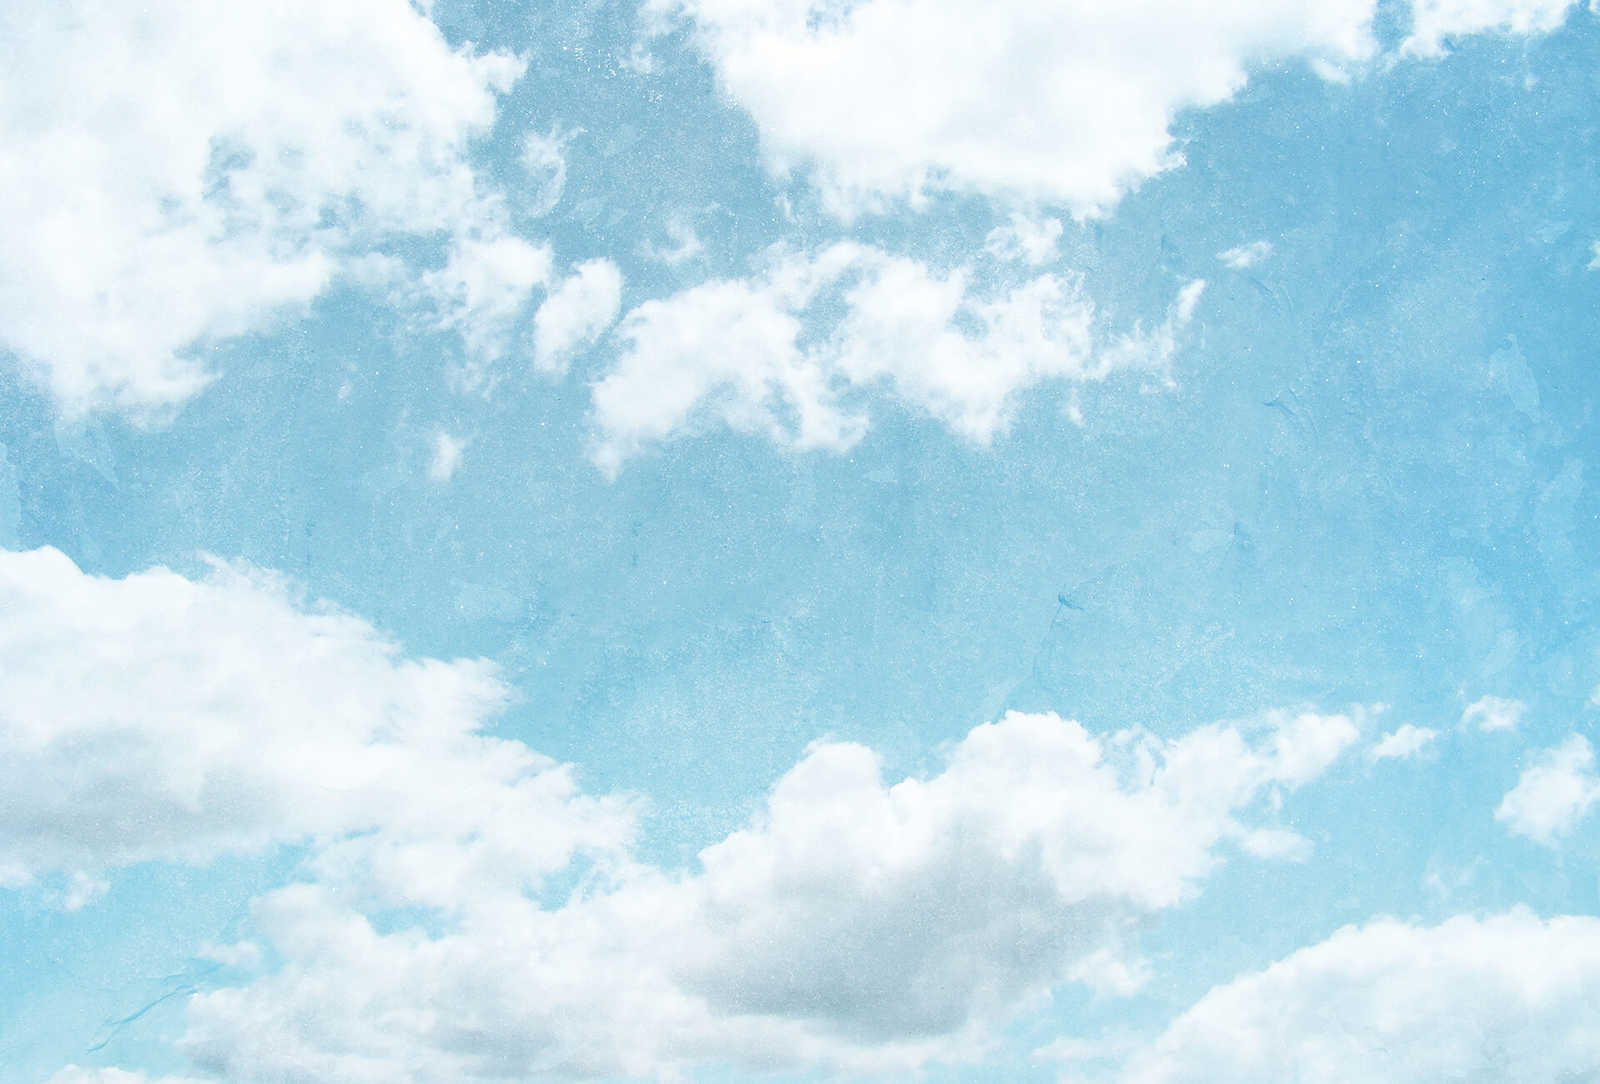         Fototapete wolkiger Himmel – Blau, Weiß
    